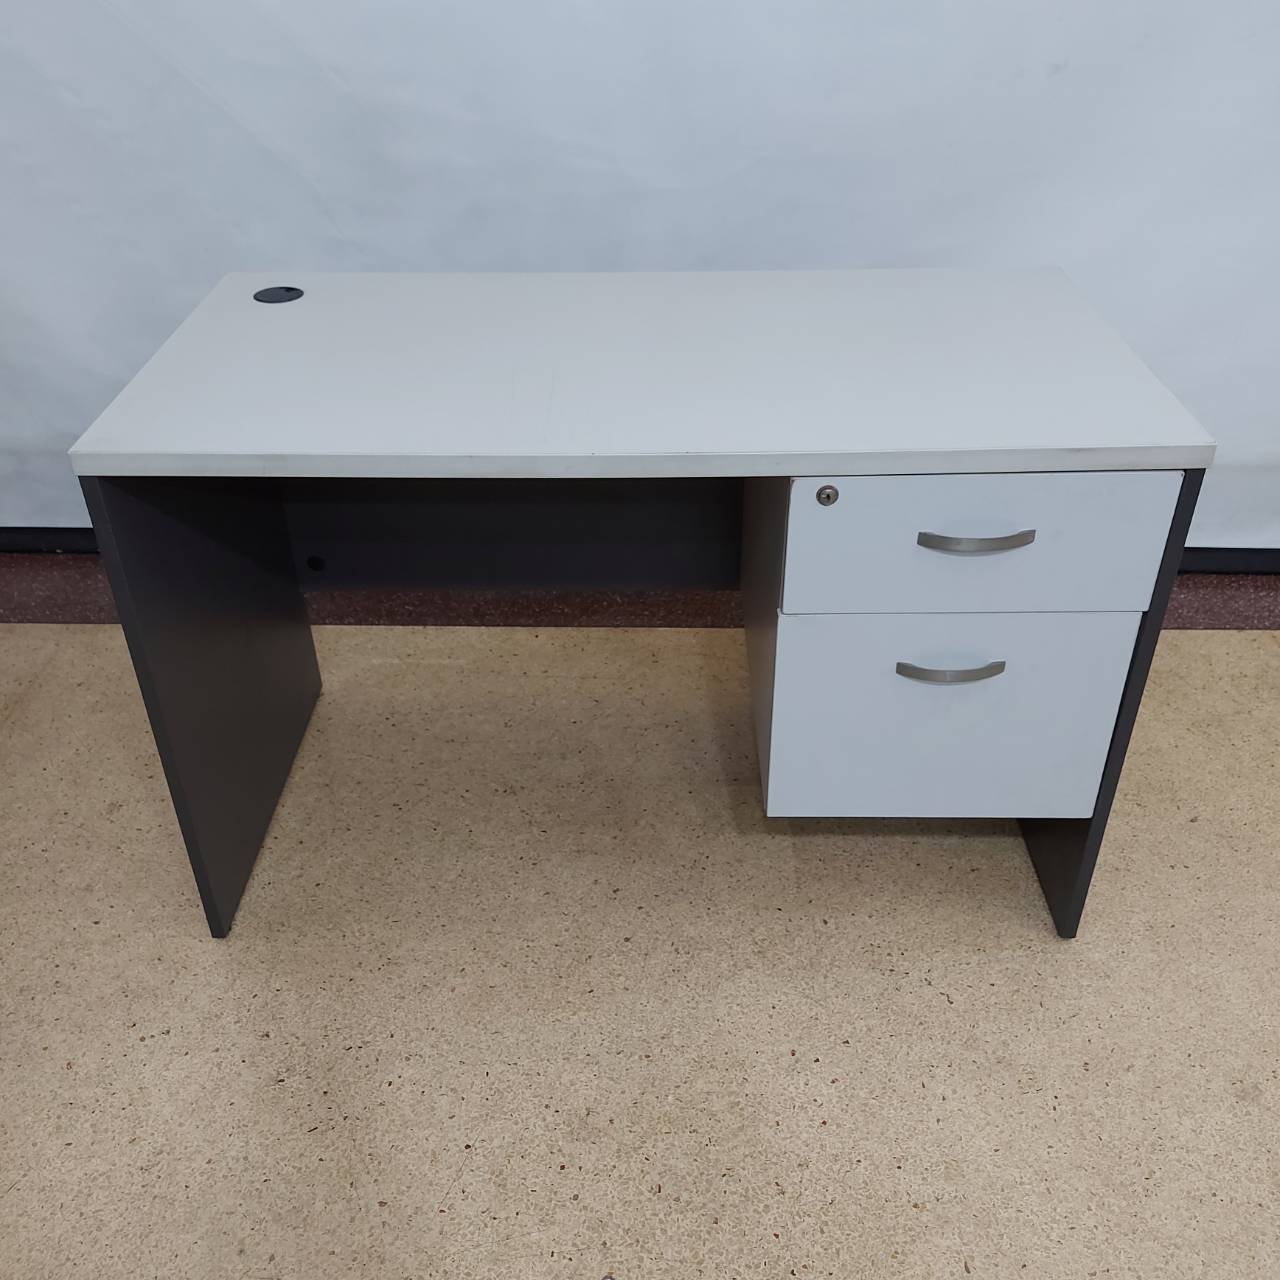 โต๊ะทำงานไม้สีเทาลิ้นชักในตัว 2 ลิ้นชัก พร้อมกุญแจยี่ห้อ PERFECT